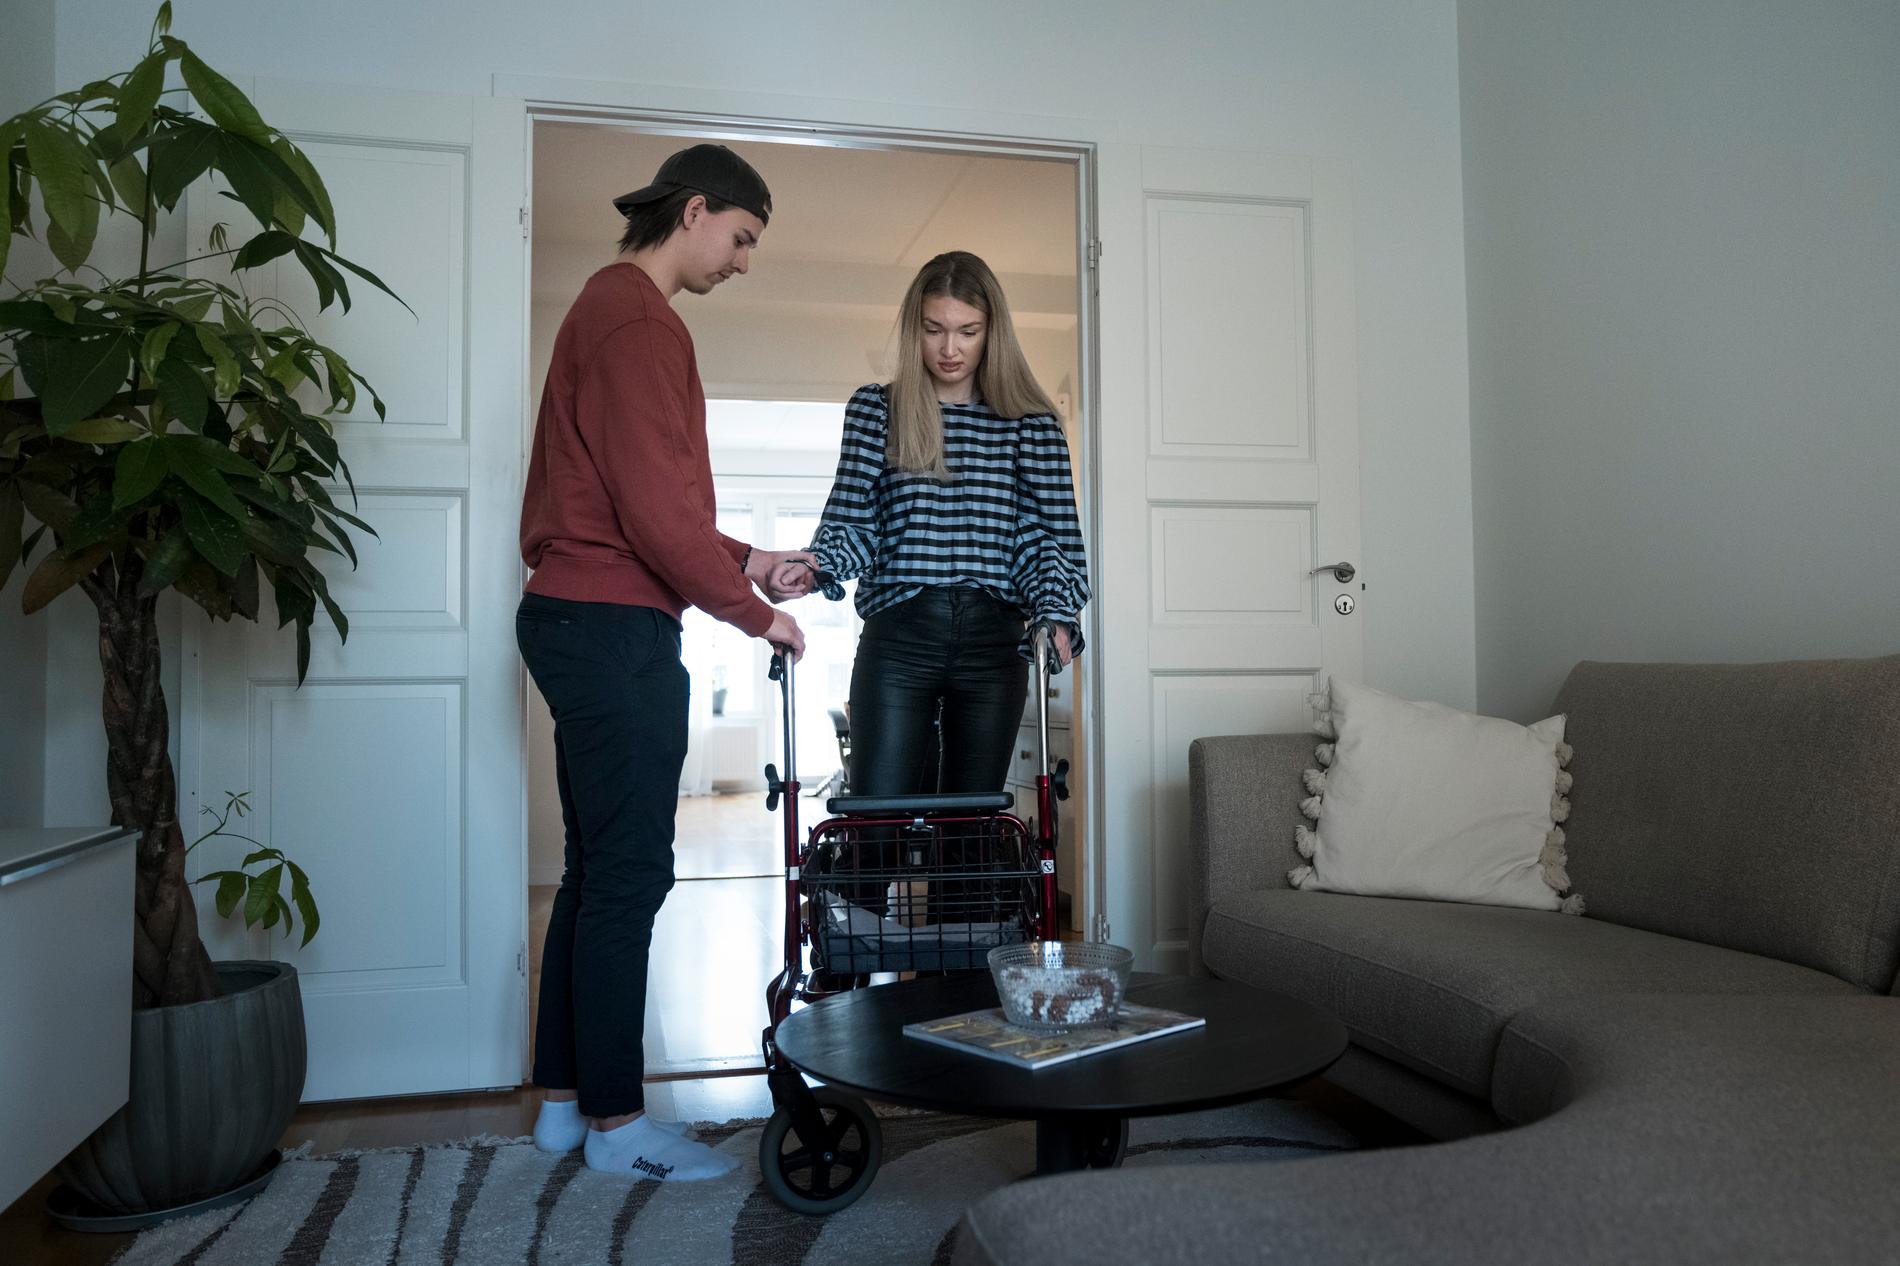 Victoria Sandsjoe lever med sjukdomen ALS. Hon behöver numera hjälp med det mesta i vardagen. Pojkvännen Markus Asplund finns vid hennes sida.